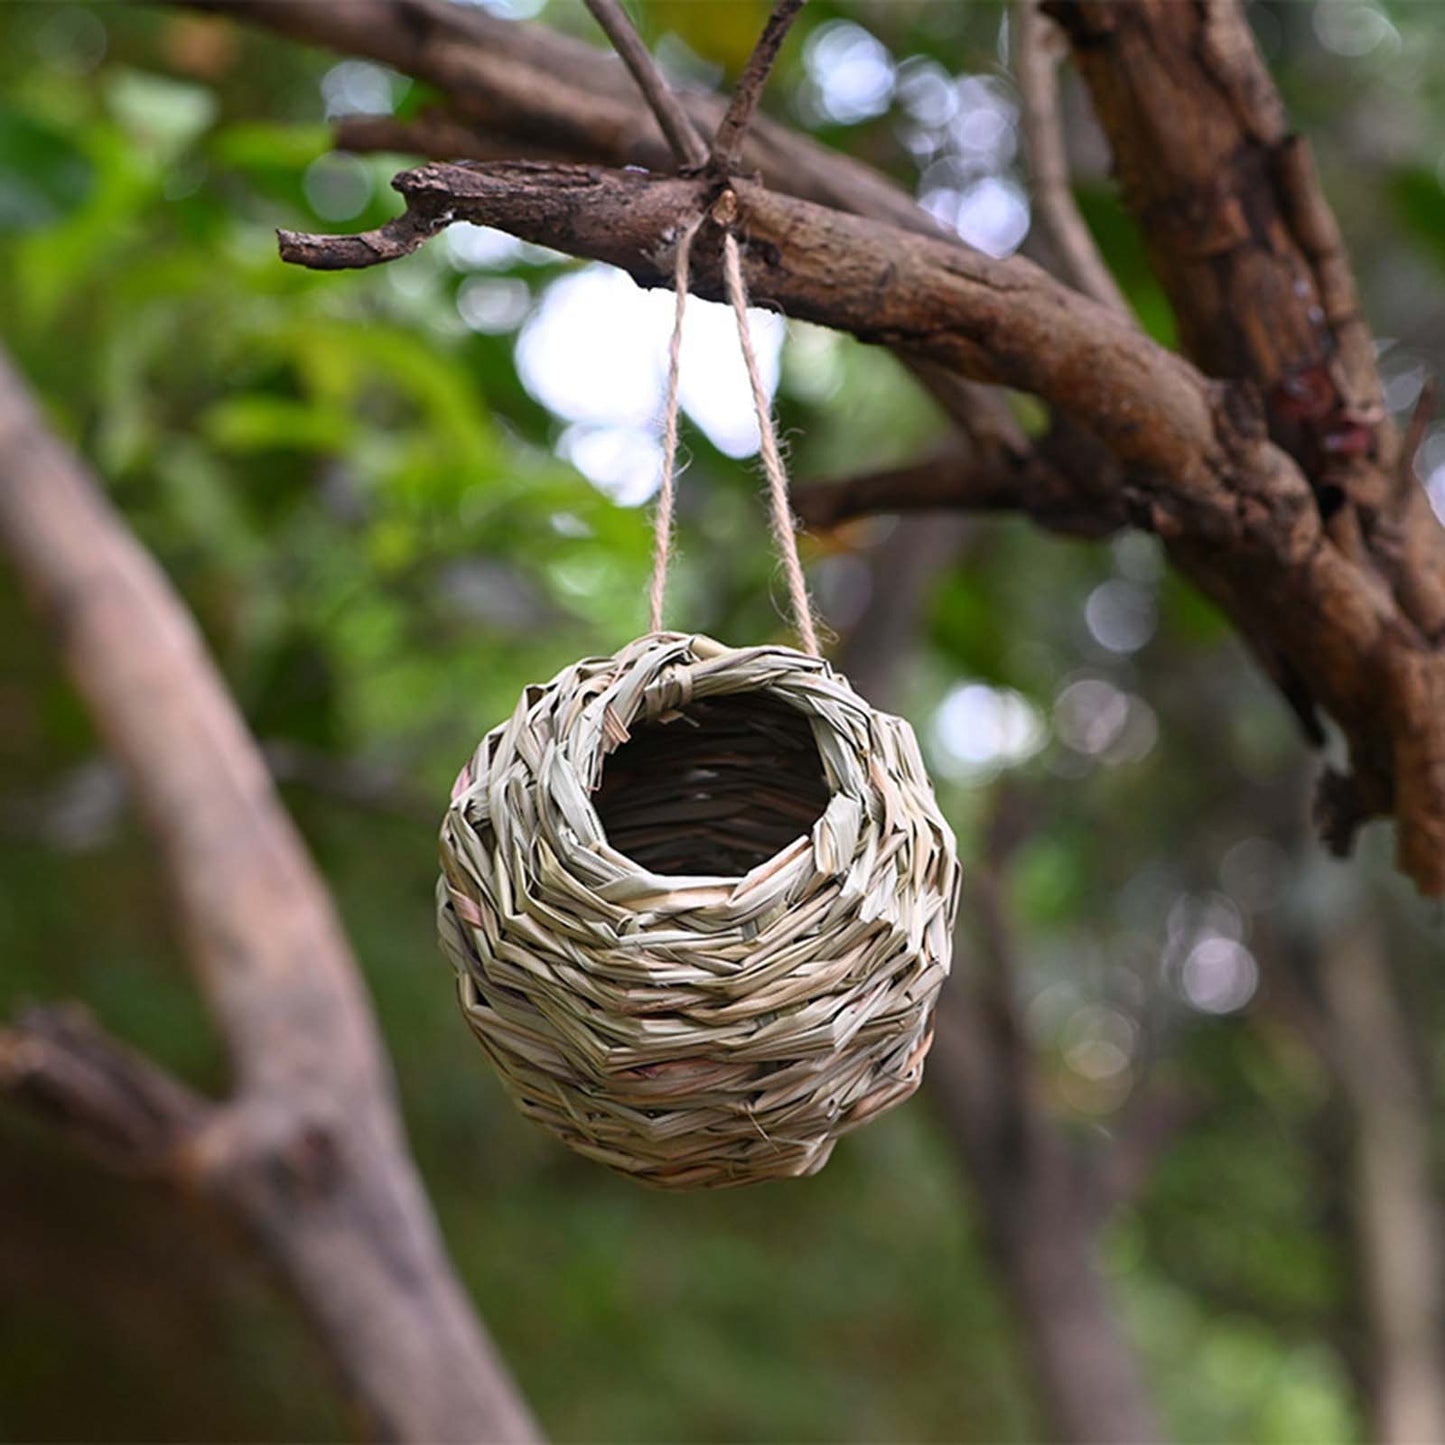 Handwoven Grass Bird House for Parrot Breeding and Hatching, Hummingbird Nest